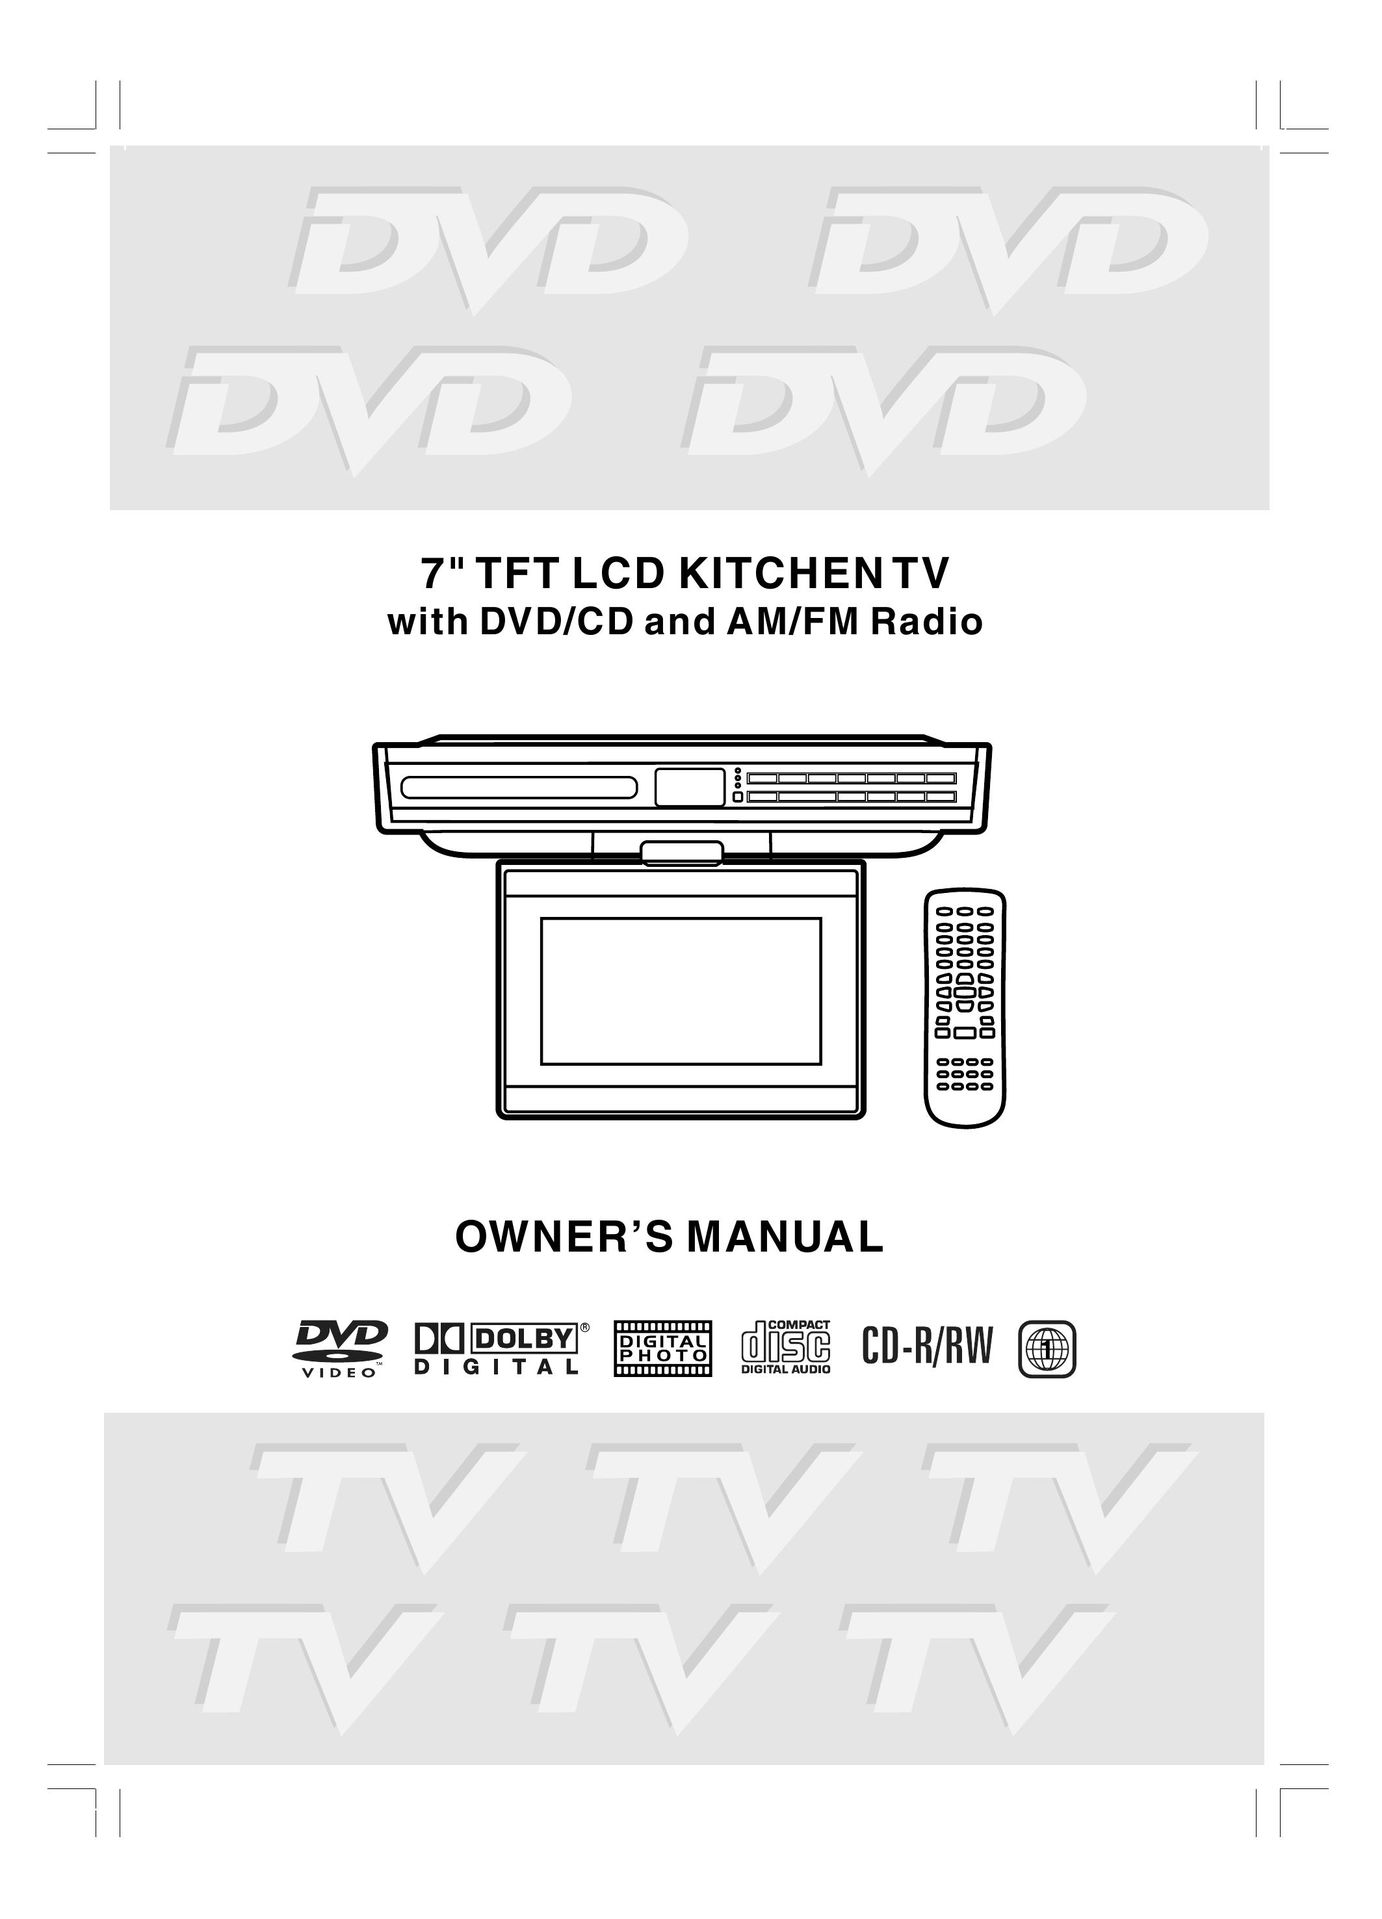 Venturer LCD Kitchen TV Car Video System User Manual